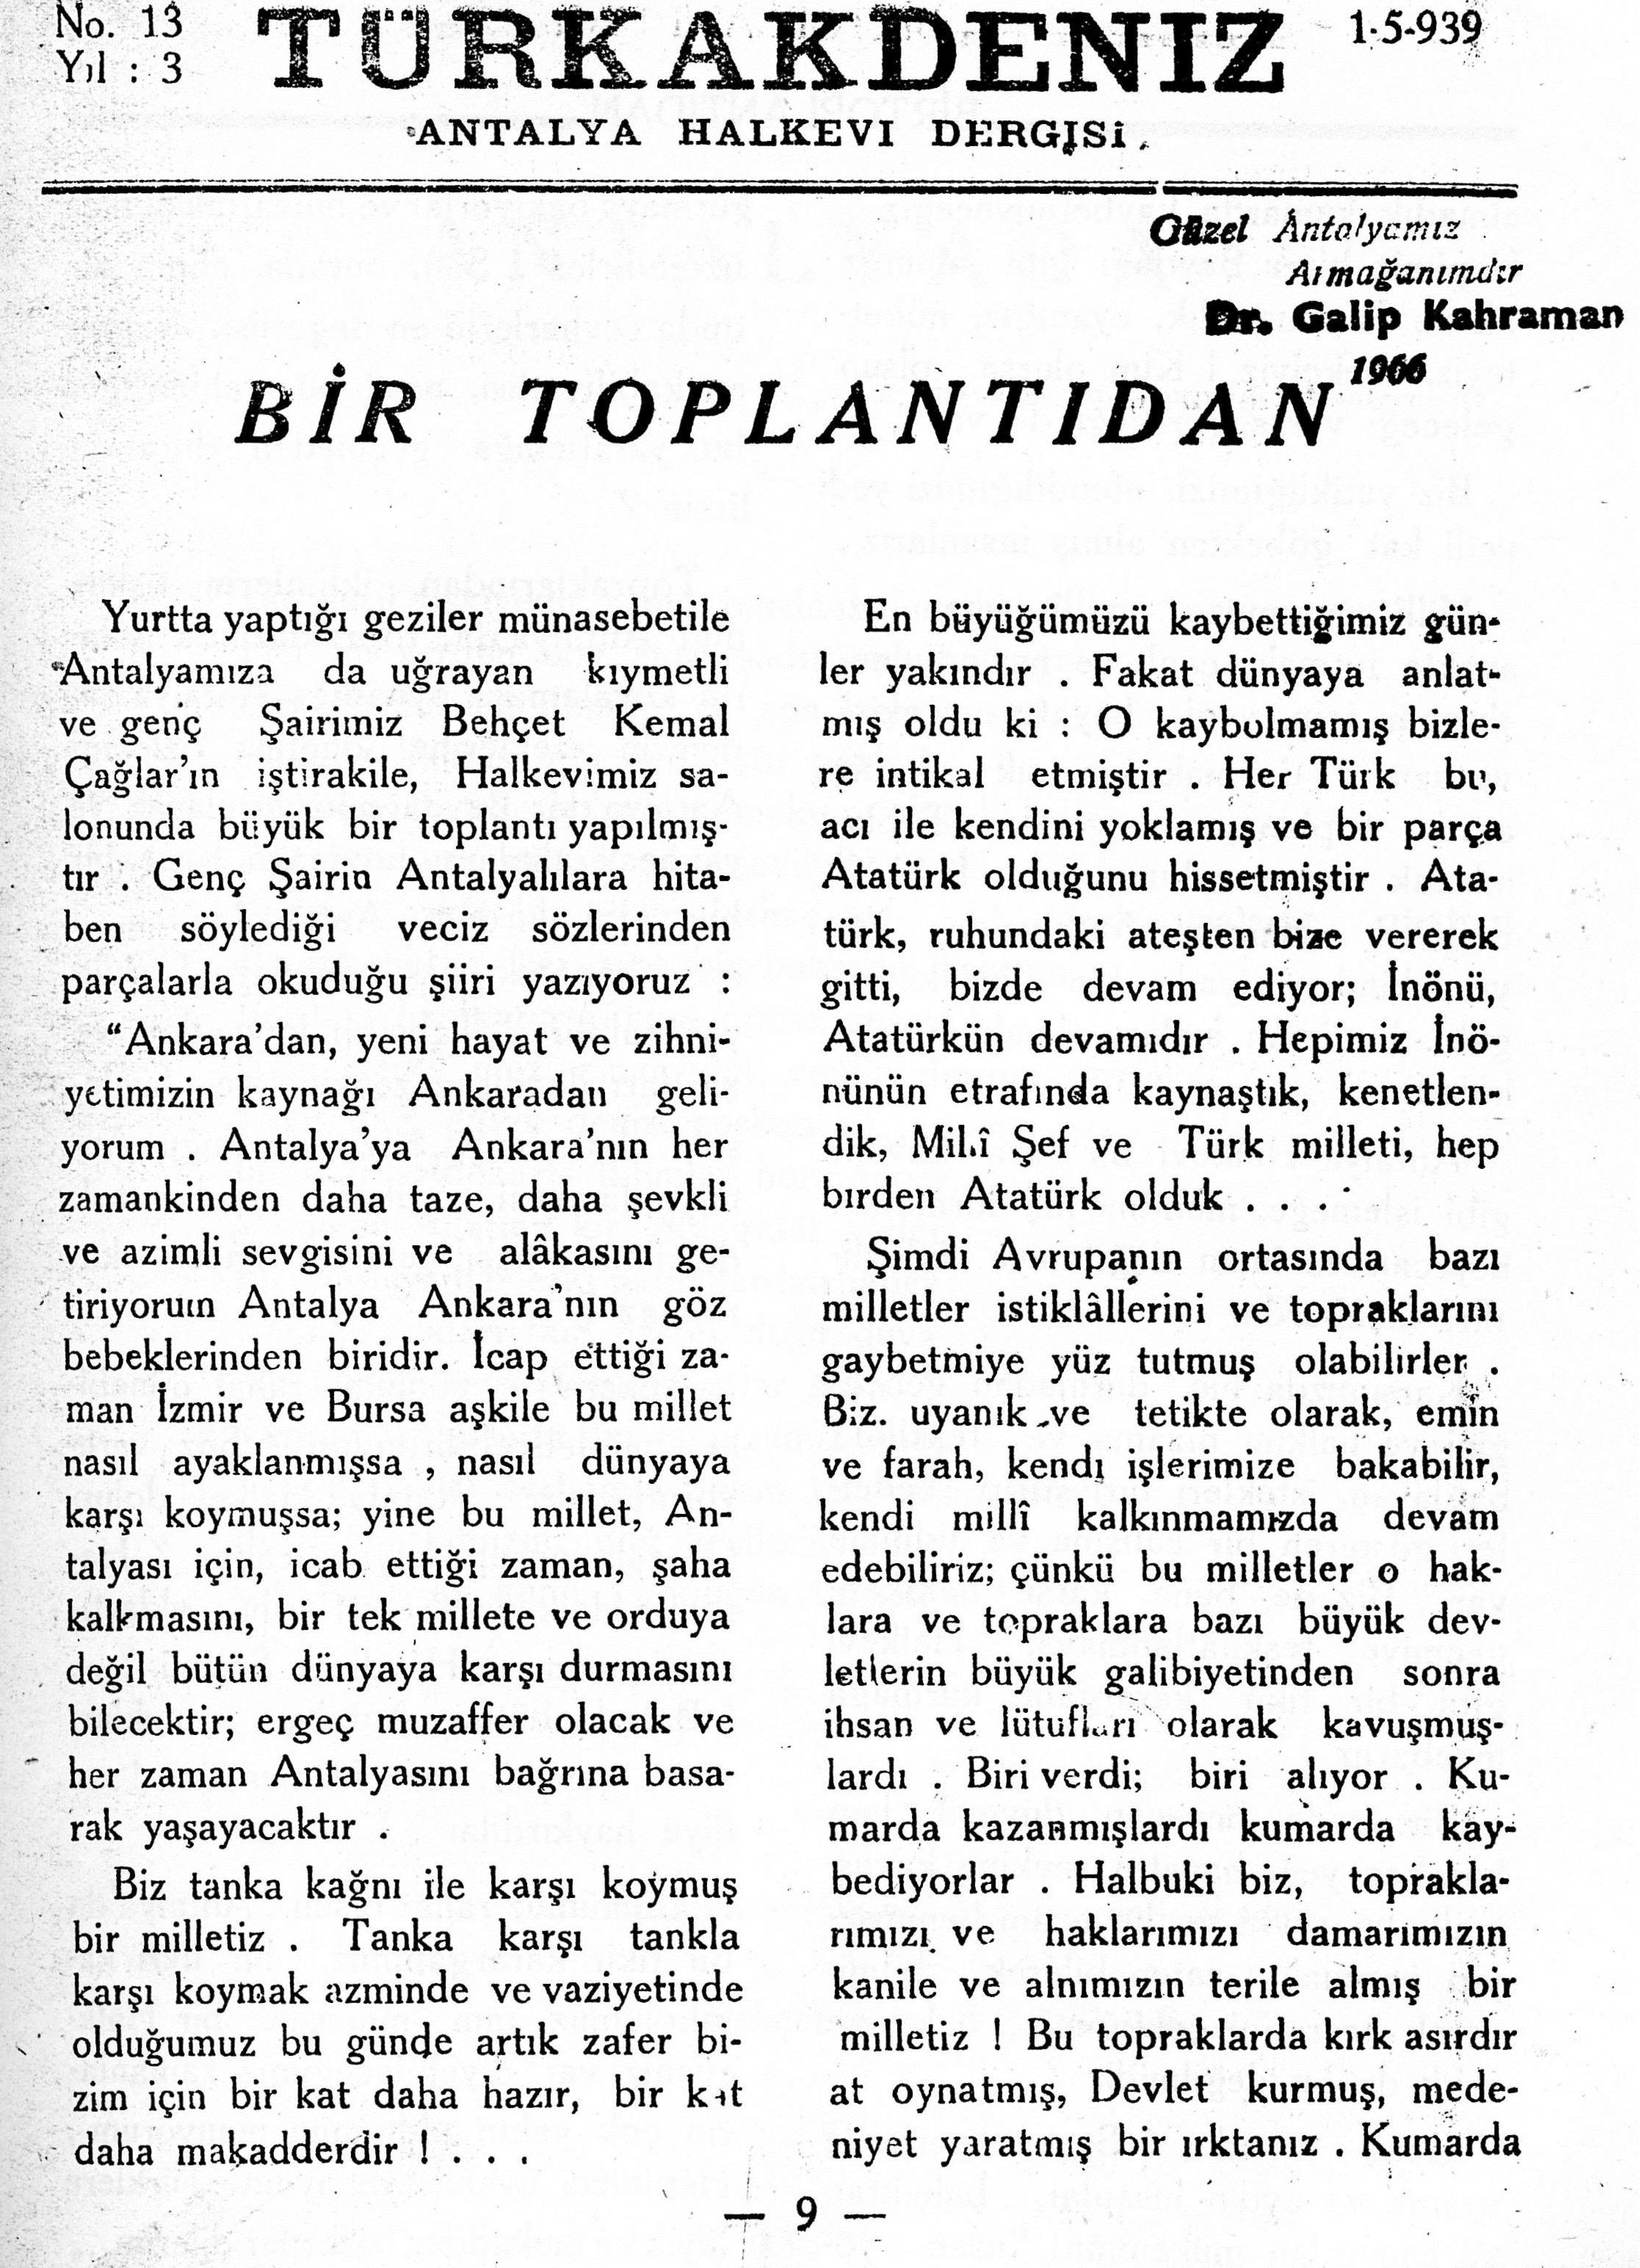 he-turk-akdeniz_1939-3(13)